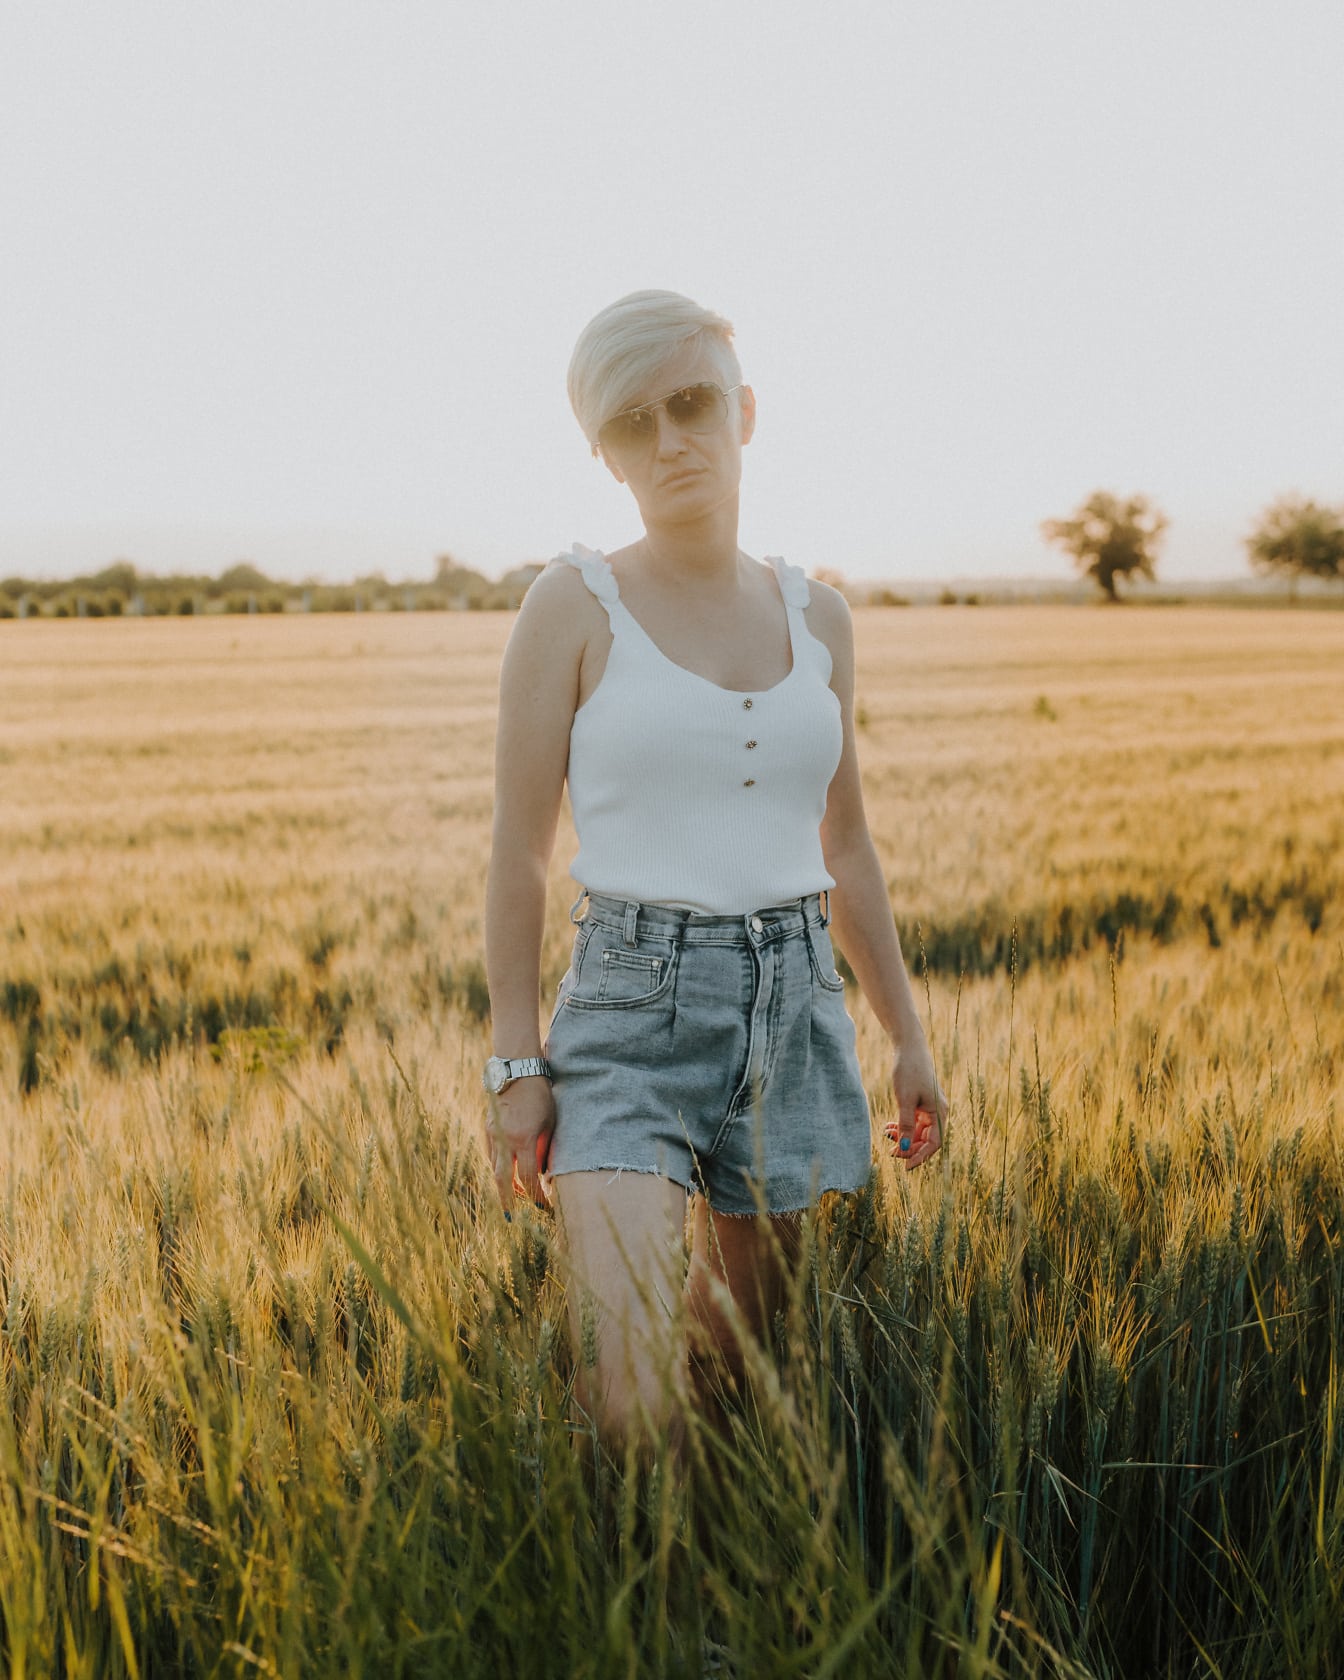 Kot pantolon, şort ve beyaz kolsuz tişört giymiş kısa saçlı bir kadın buğday tarlasında duruyor